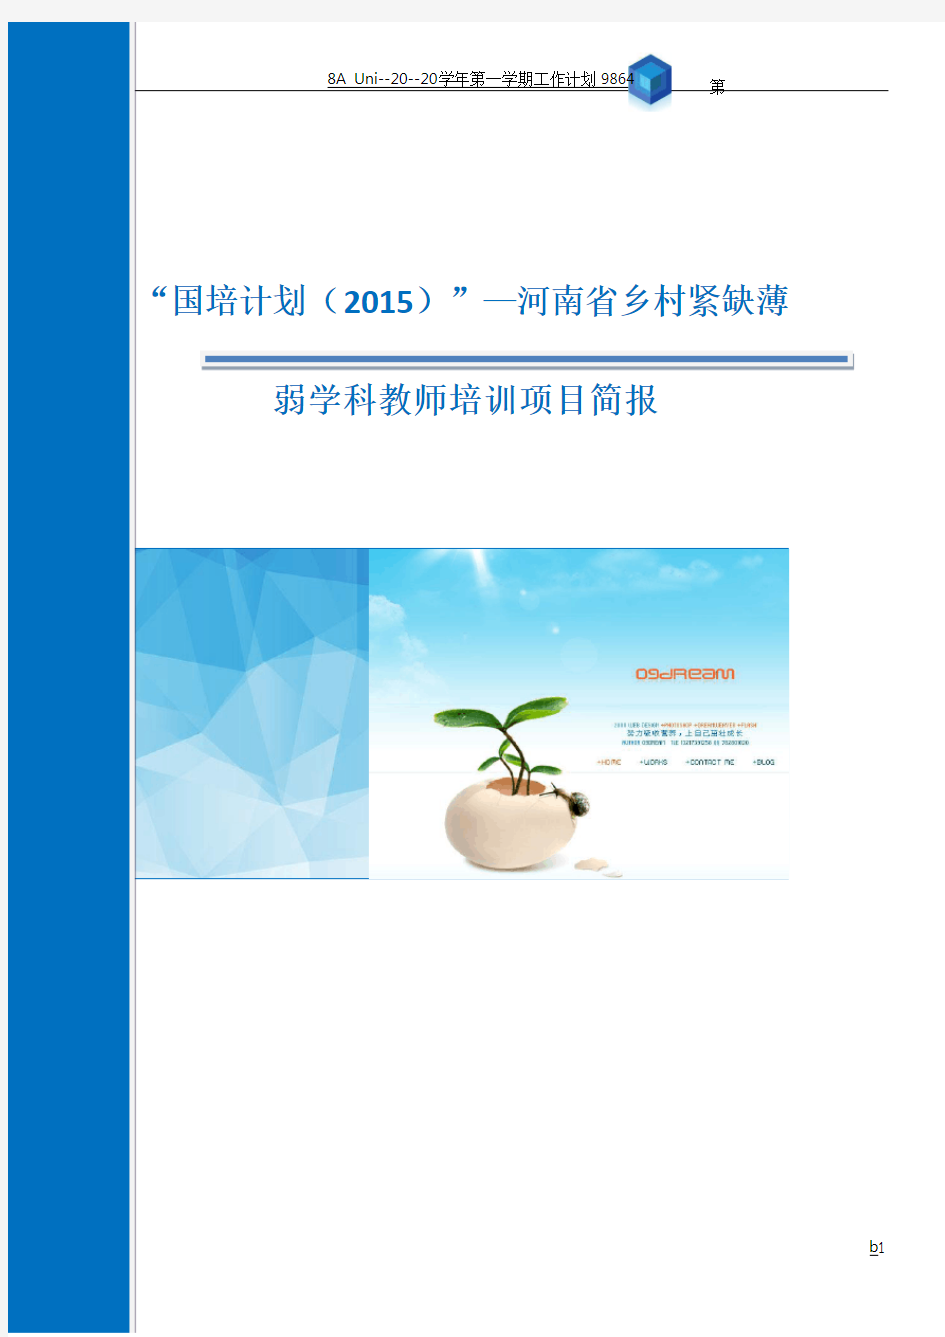 3--“国培计划(2015)”—河南省乡村紧缺薄弱学科教师培训项目第一期项目简报